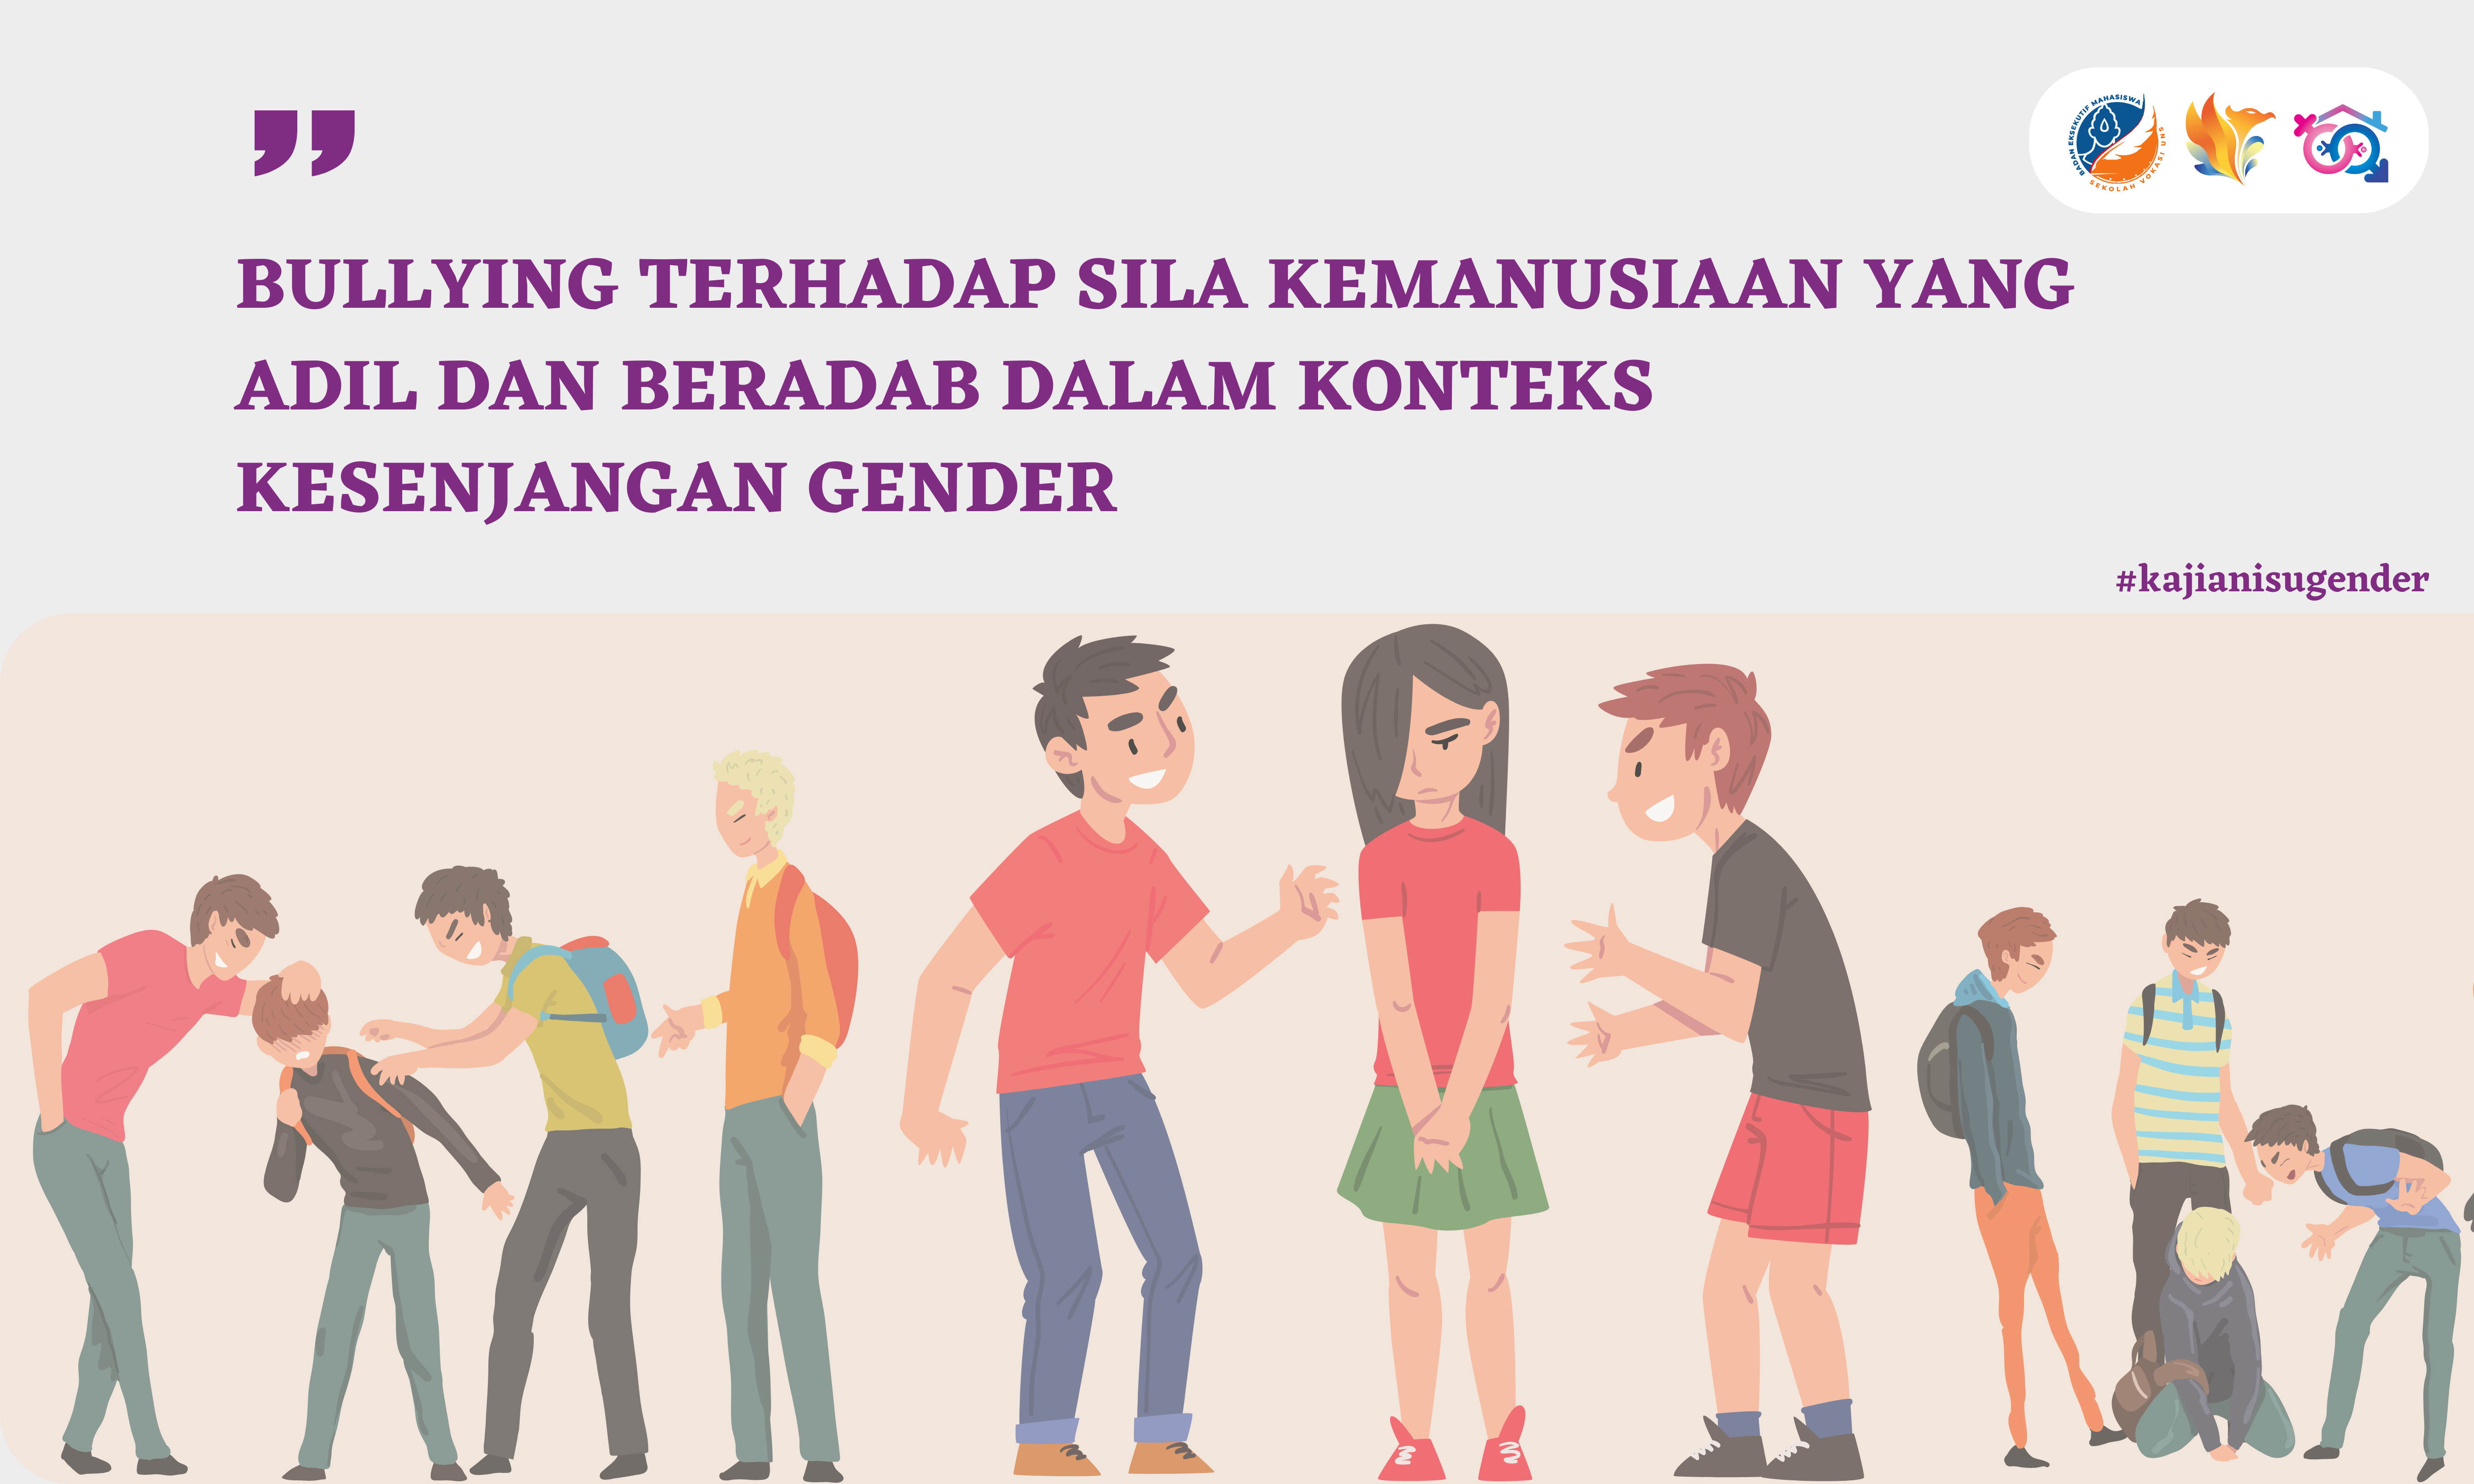 Bullying Terhadap Sila Kemanusiaan yang Adil dan Beradab dalam Konteks Kesenjangan Gender